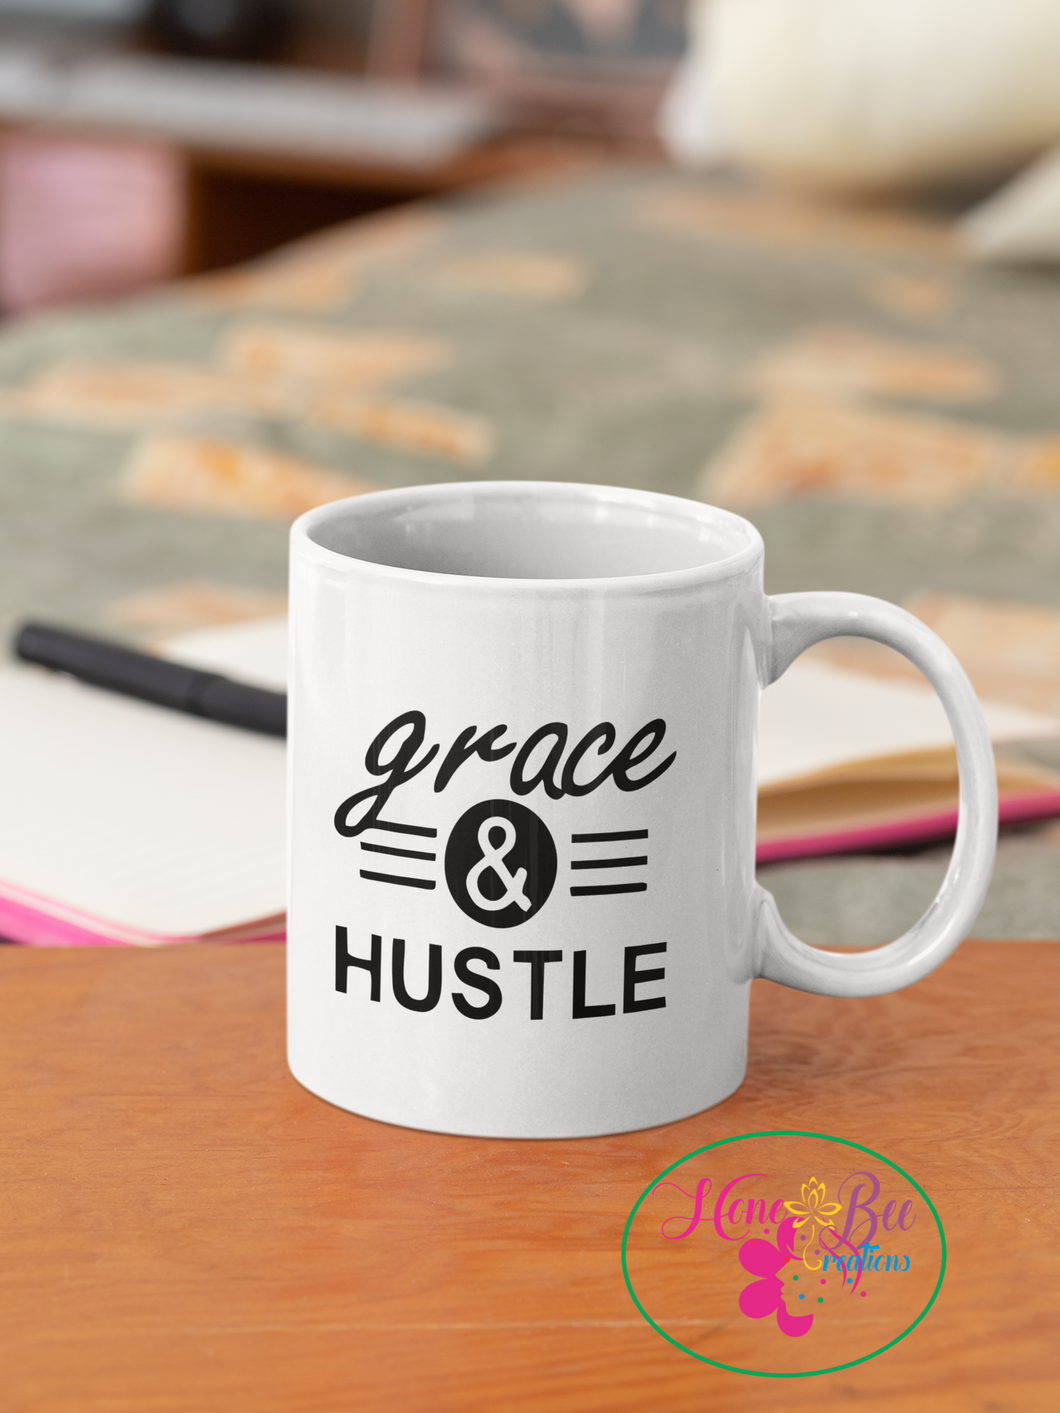 Grace & Hustle mug